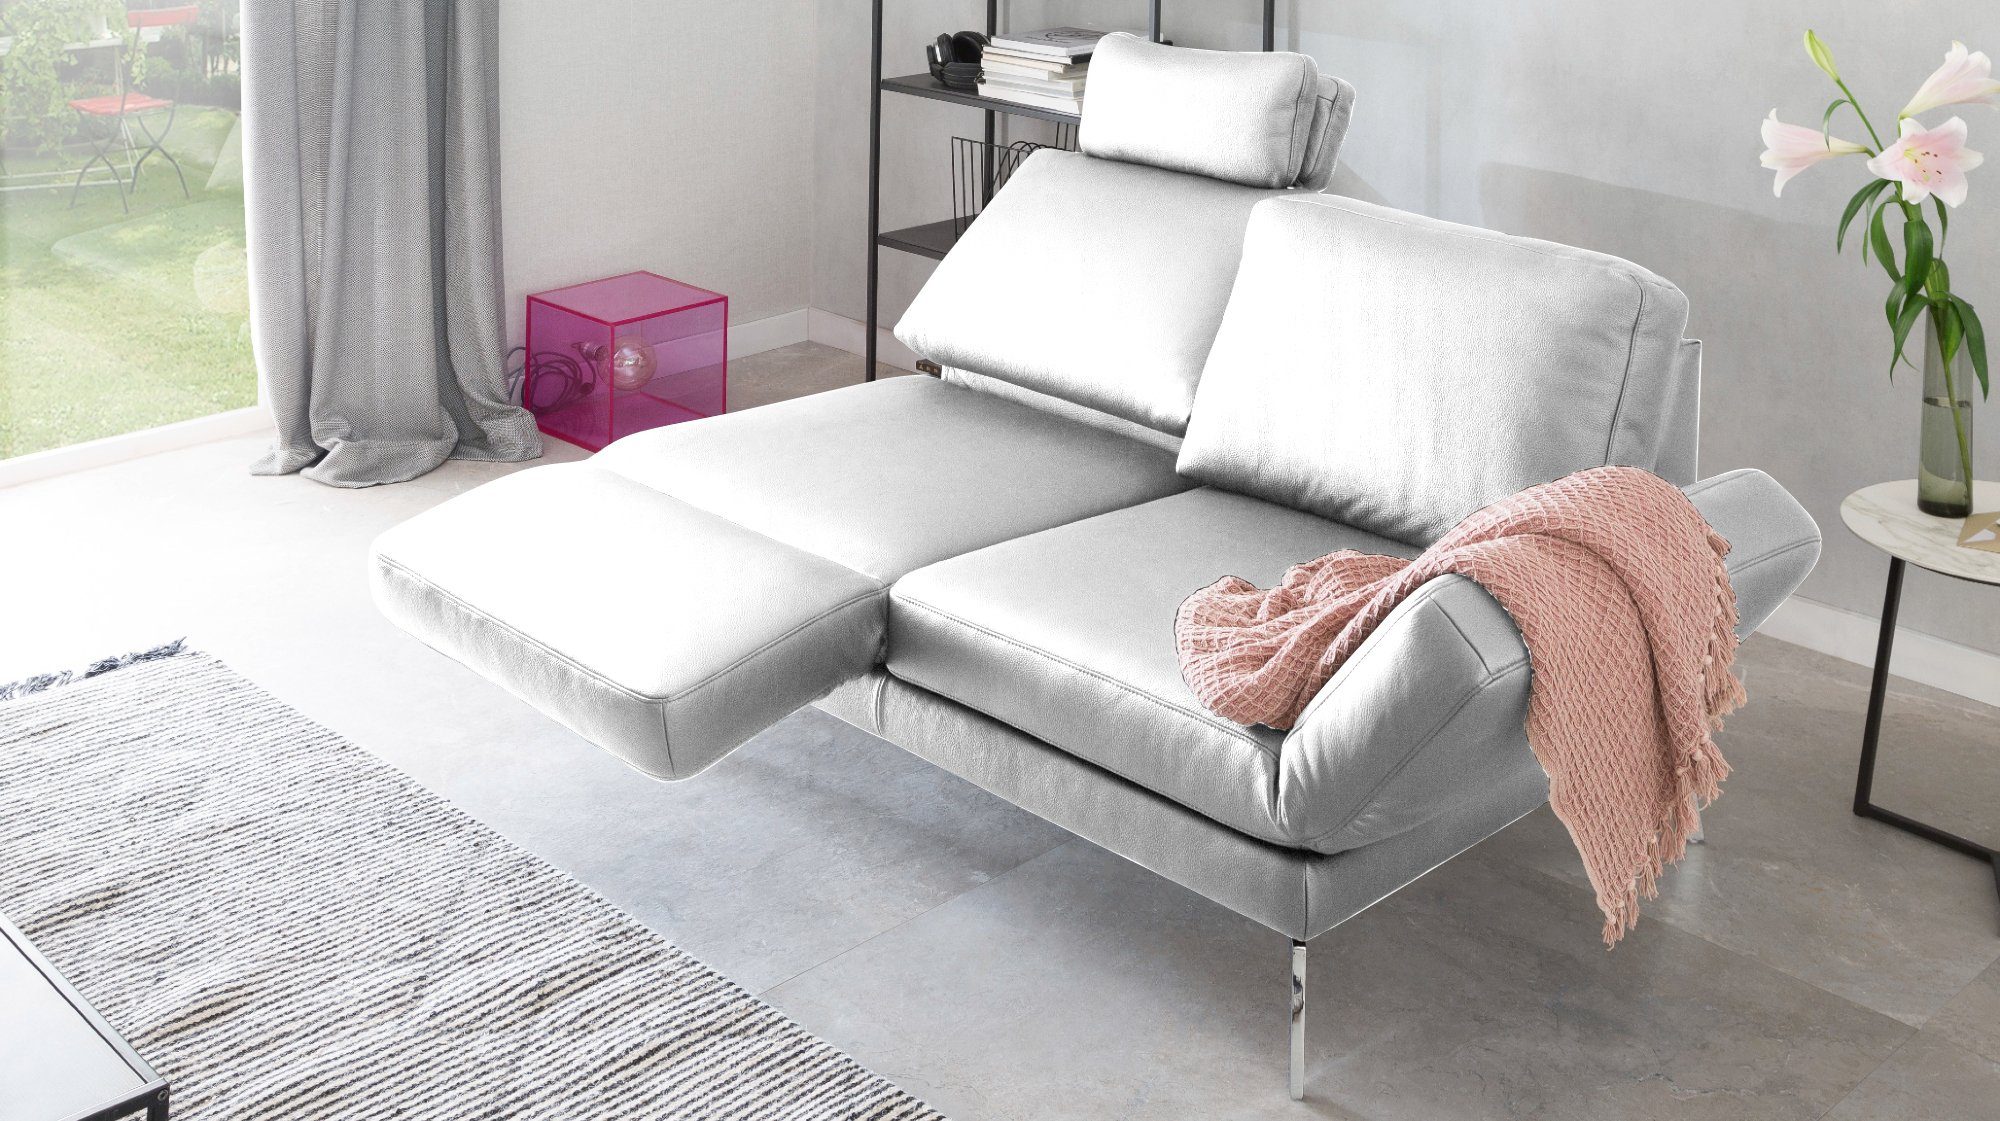 KAWOLA 2-Sitzer HURRICANE, Sofa Leder Farben verschiedene weiß